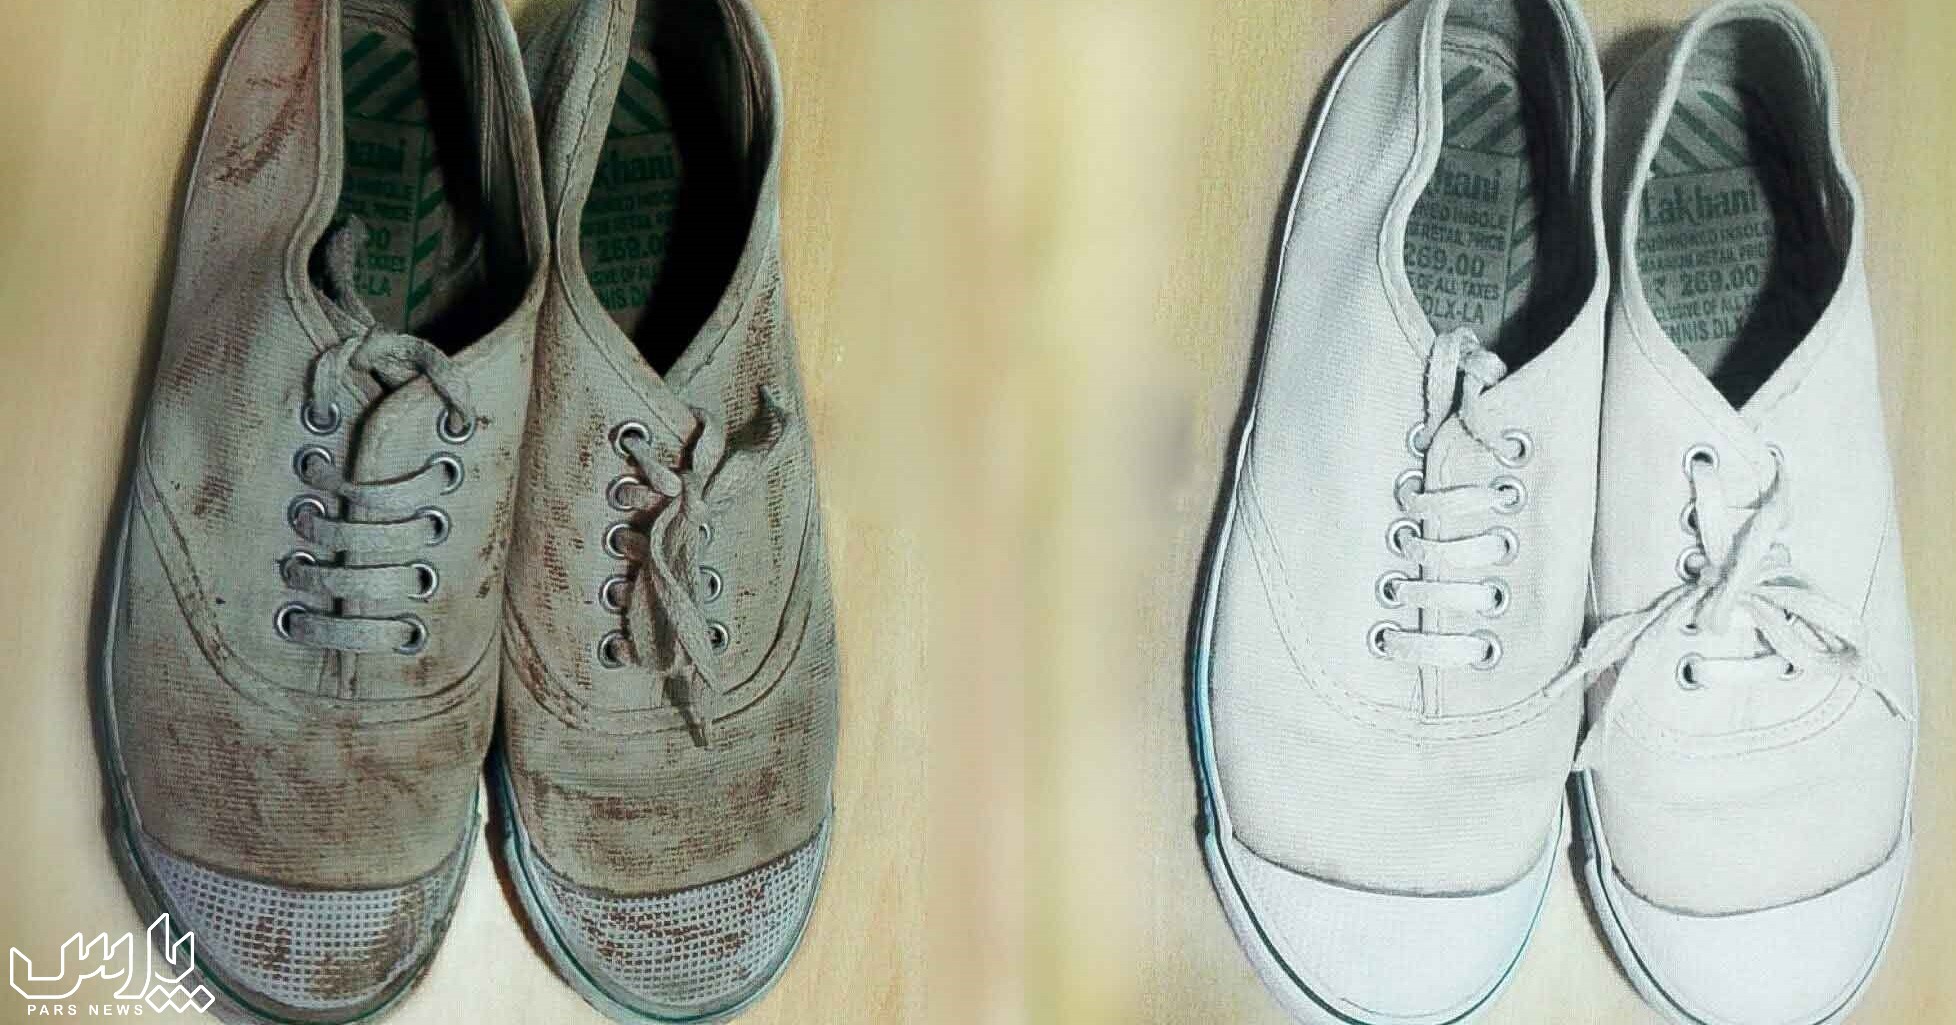 شستن کفش - تمیز کردن کفش سفید